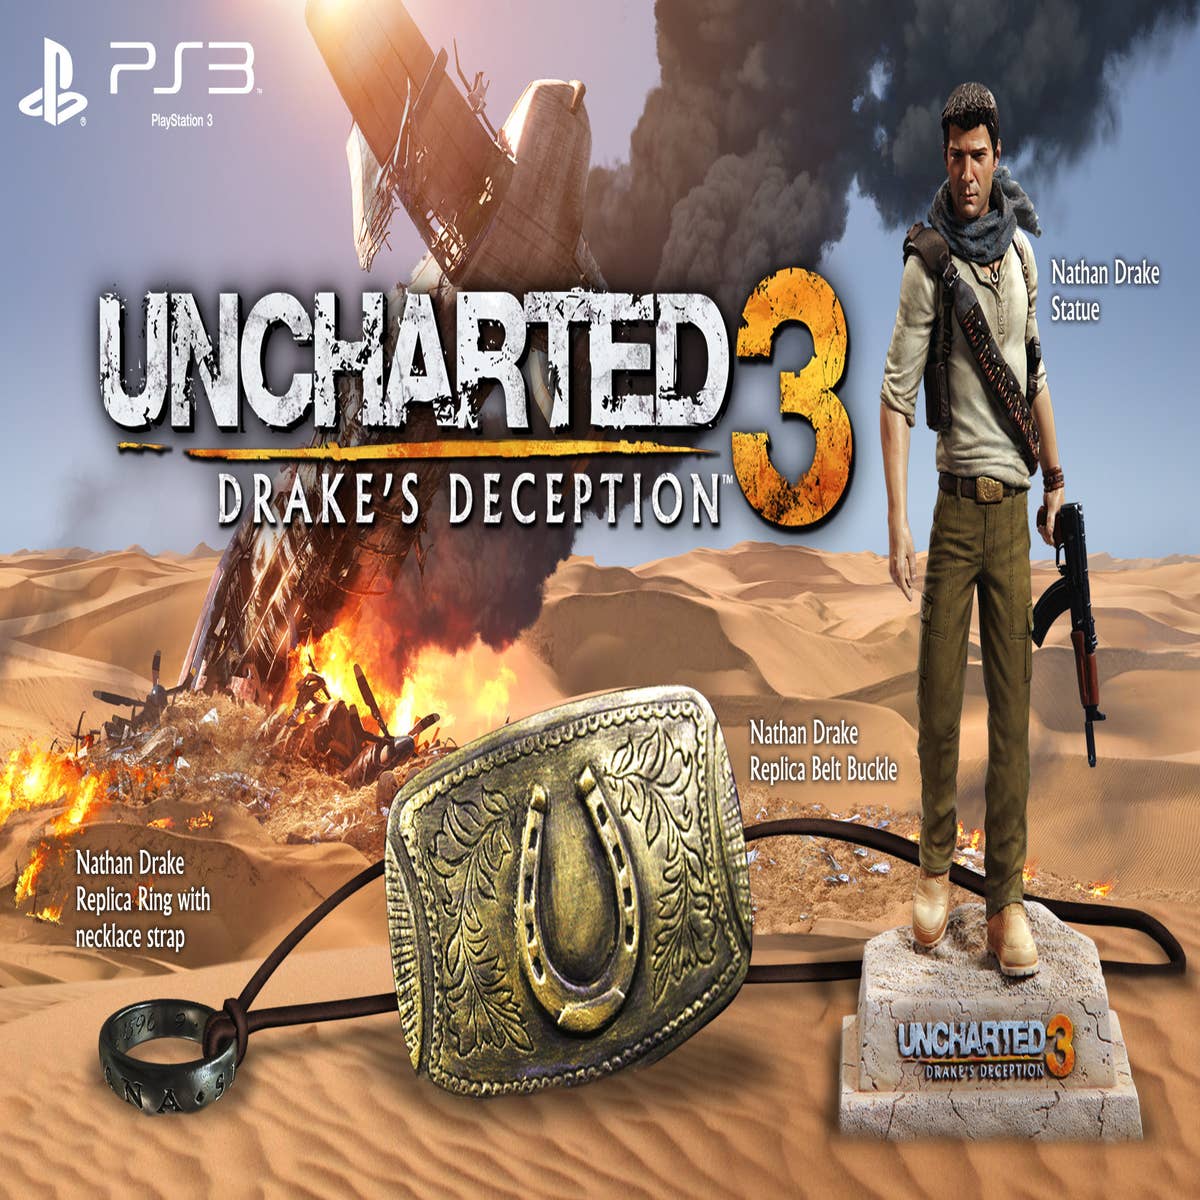 SUPER EDIÇÕES: Uncharted 3 Drakes Deception